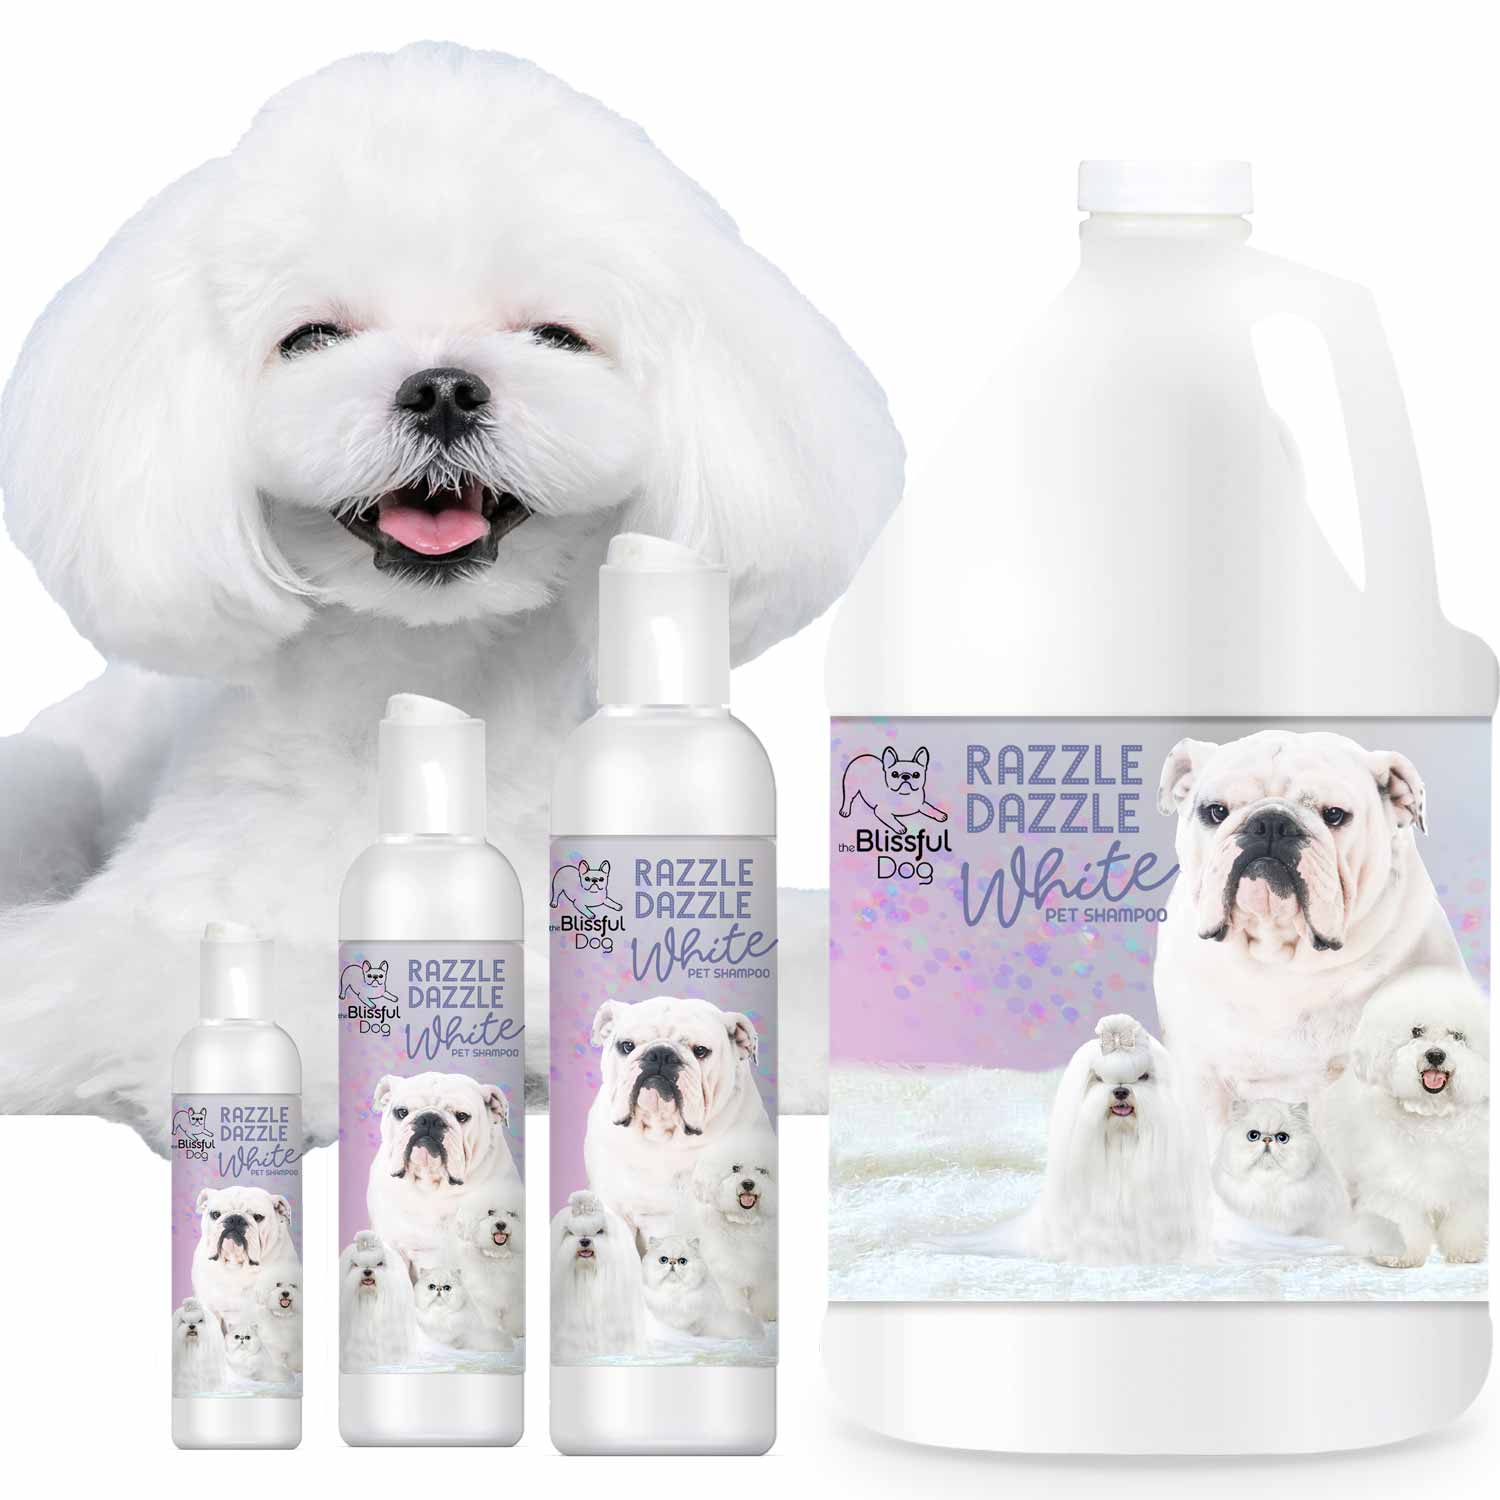 Shampoo | Razzle Dazzle White Dog Shampoo